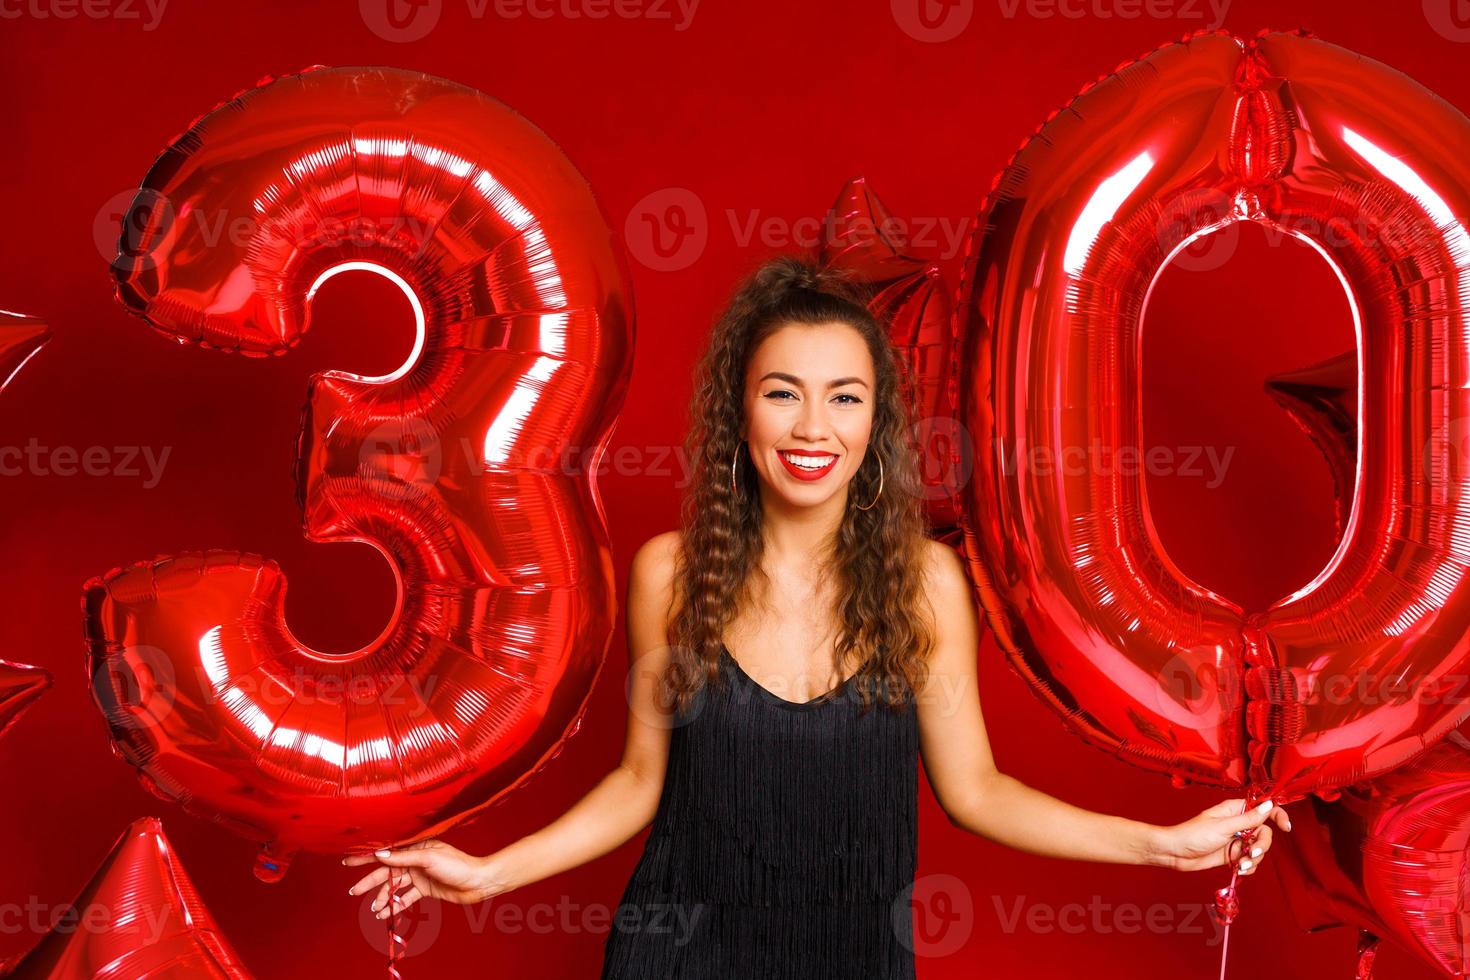 giovane donna adulta sullo sfondo di palloncini rossi foto